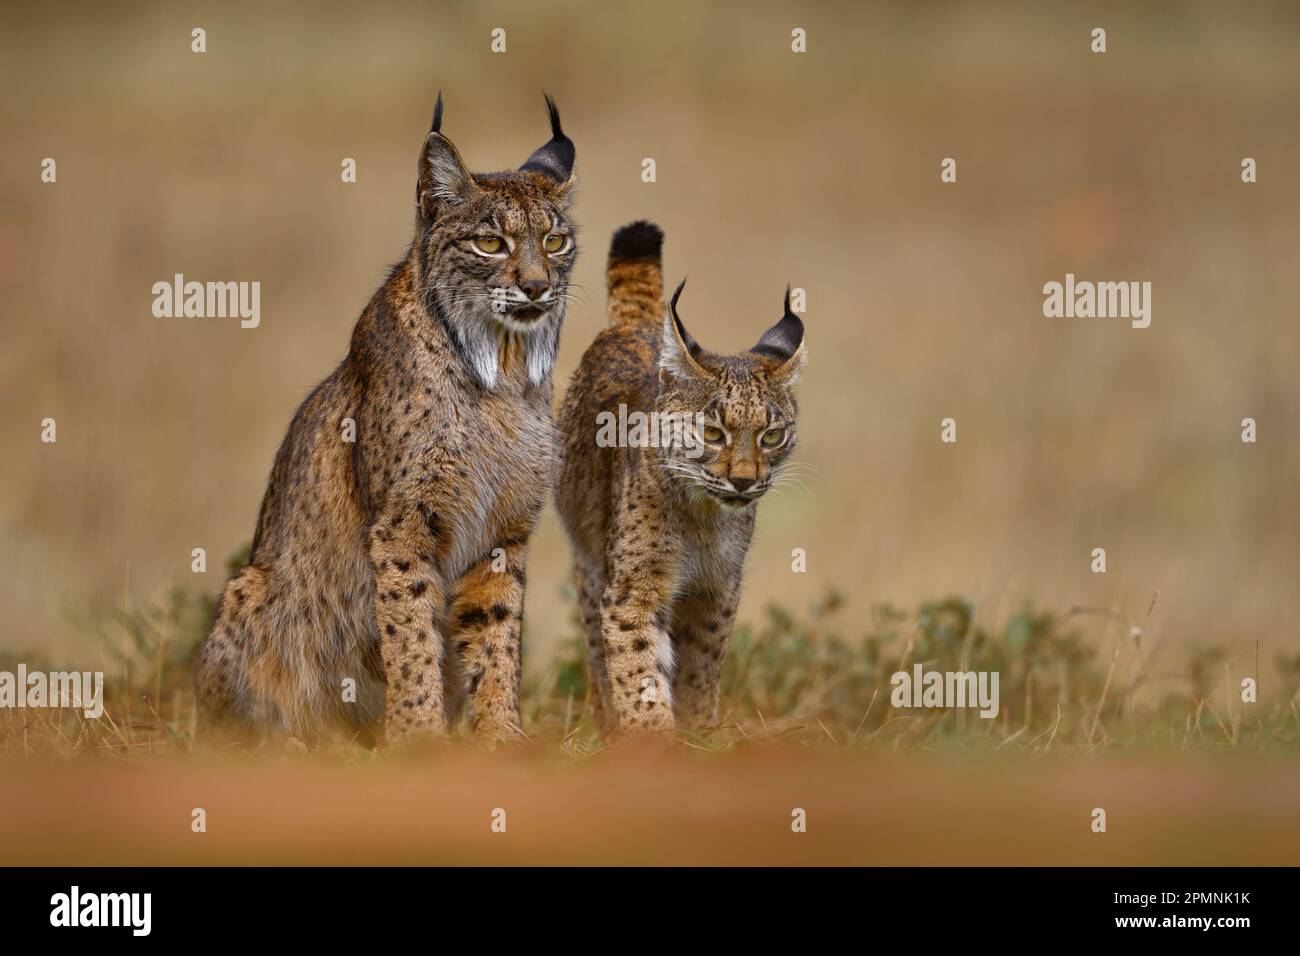 Lynx ibérique, Lynx pardinus, mère avec un jeune chaton, chat sauvage endémique à la péninsule ibérique dans le sud-ouest de l'Espagne en Europe. Rare chat marche dans la nat Banque D'Images